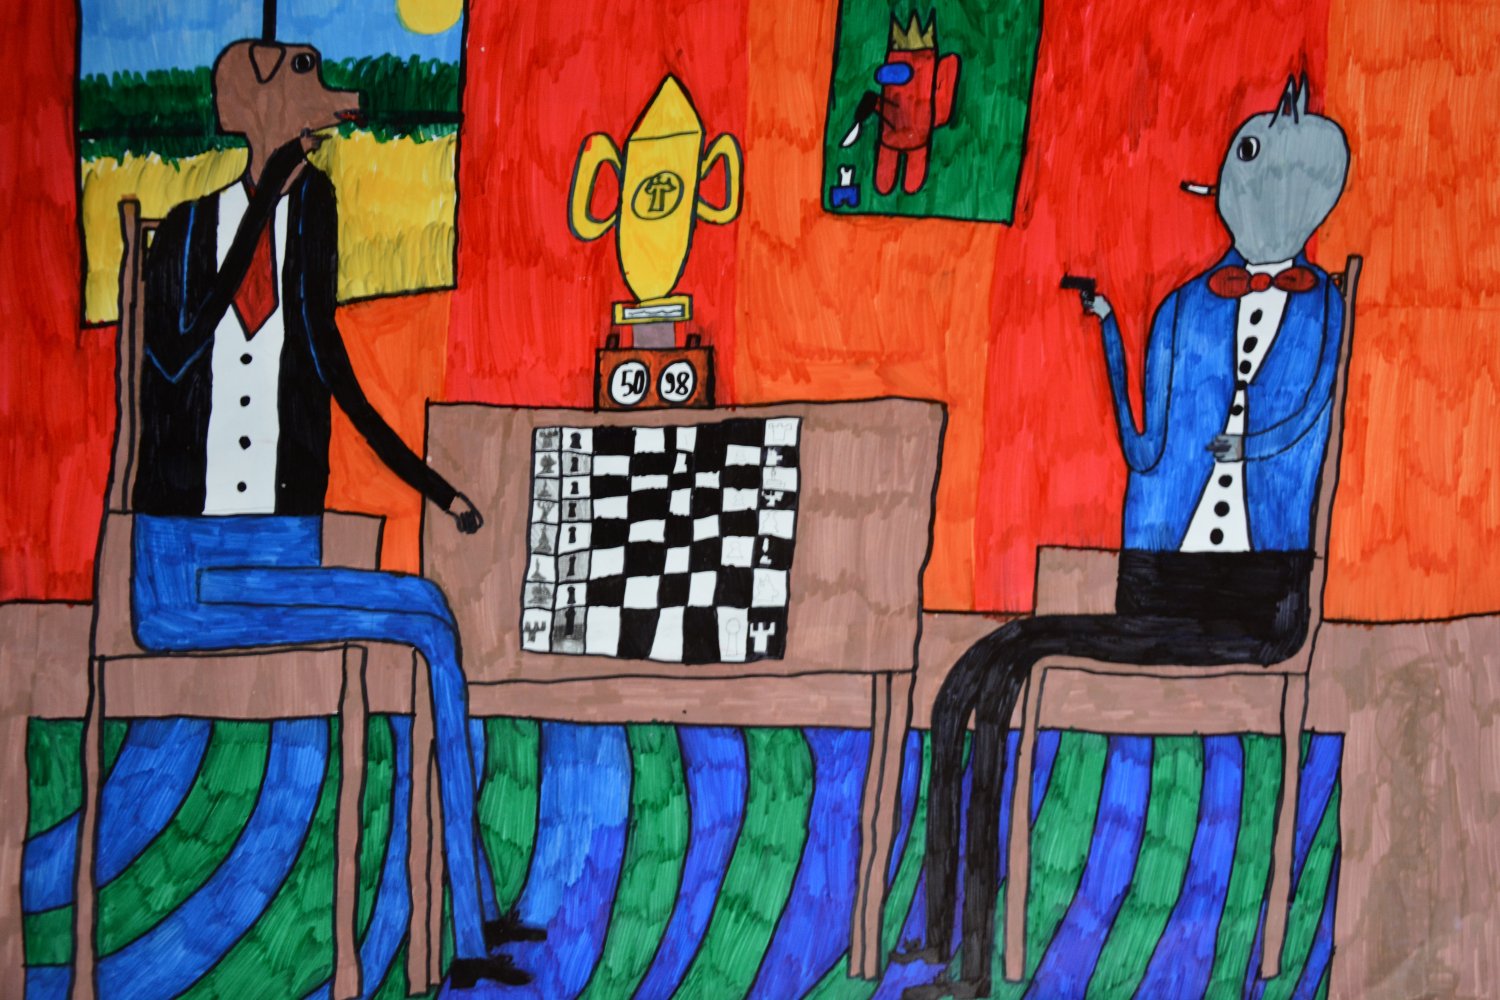 I miejsce: Jan Choniawko. 10 lat. Tytuł “Zwierzoludzie i szachy”. Piękna i kolorowa kompozycja przedstawia zwierzęta o cechach ludzkich, które grają w szachy. Technika flamaster na papierze.